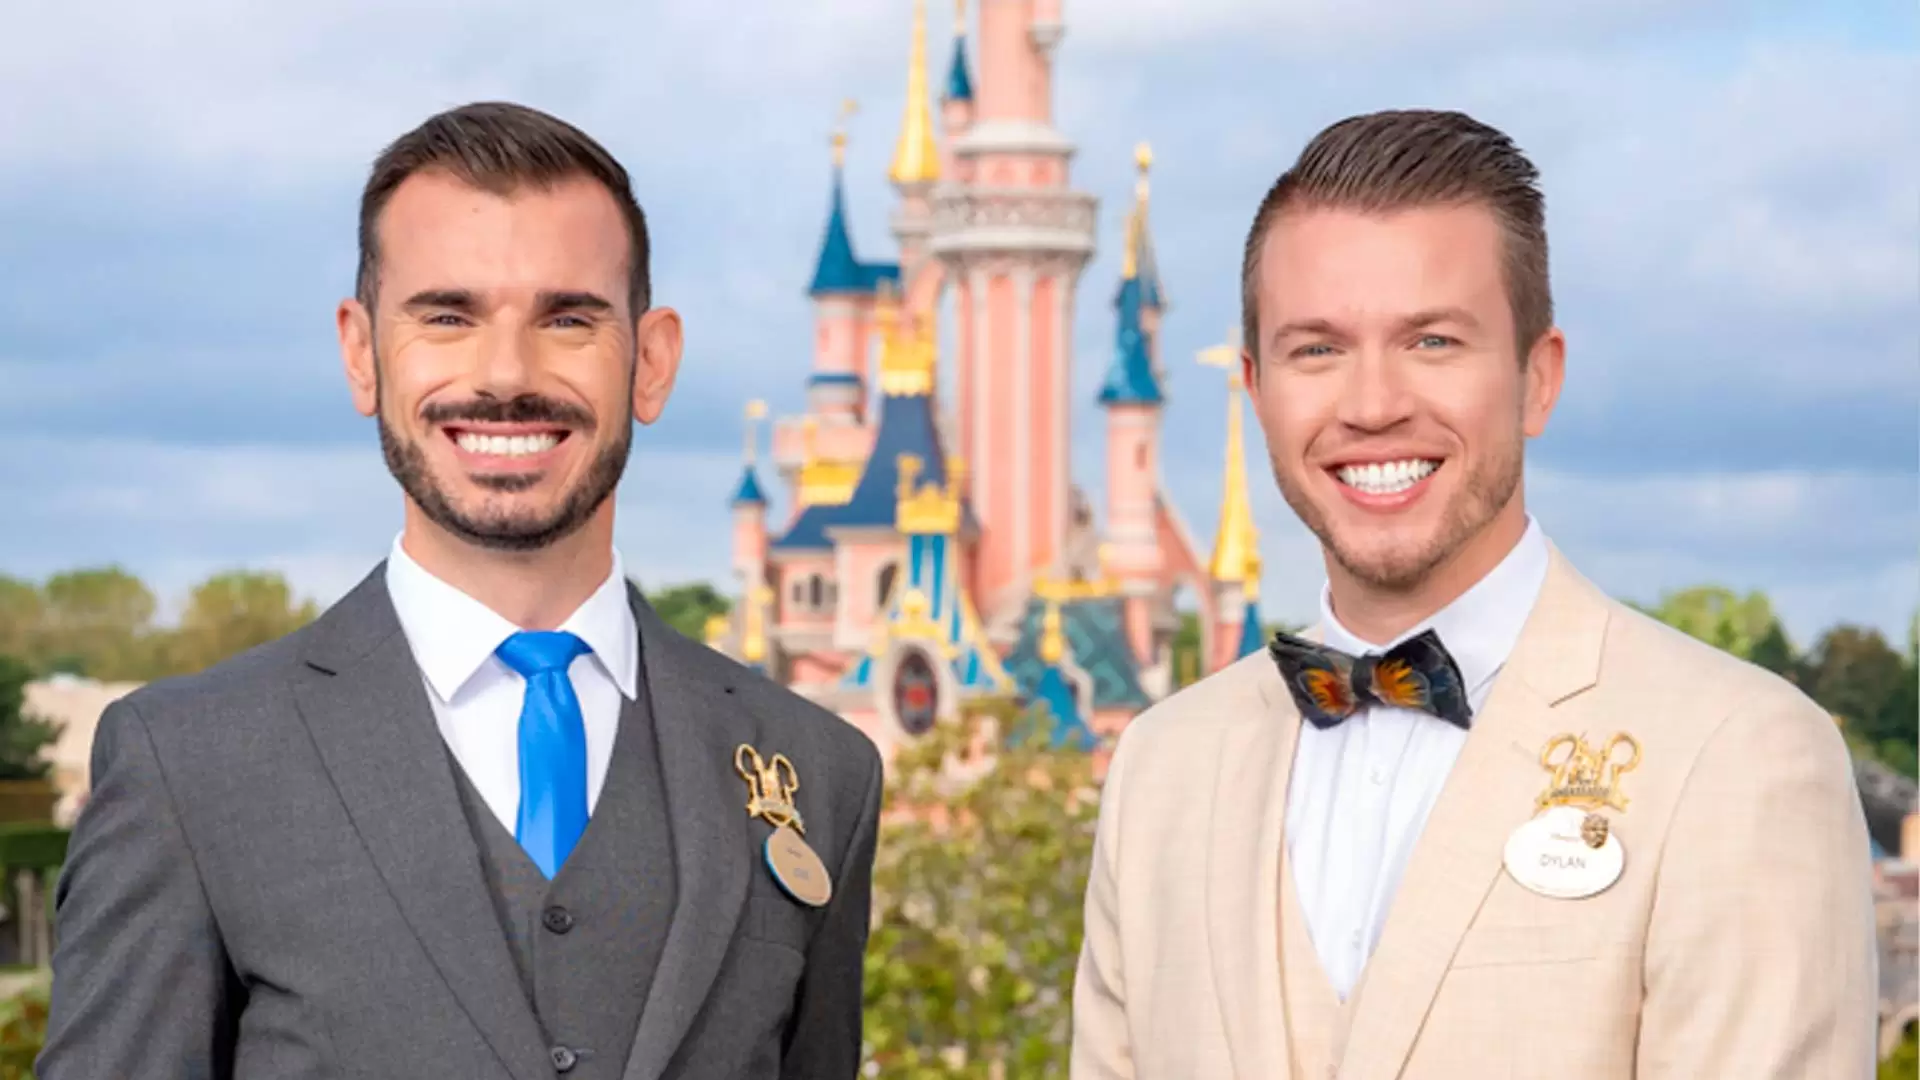 Deux ambassadeurs souriants portant des badges Disneyland Paris, l'un en costume gris et cravate bleue, l'autre en costume beige avec un nœud papillon coloré, debout devant un Disney